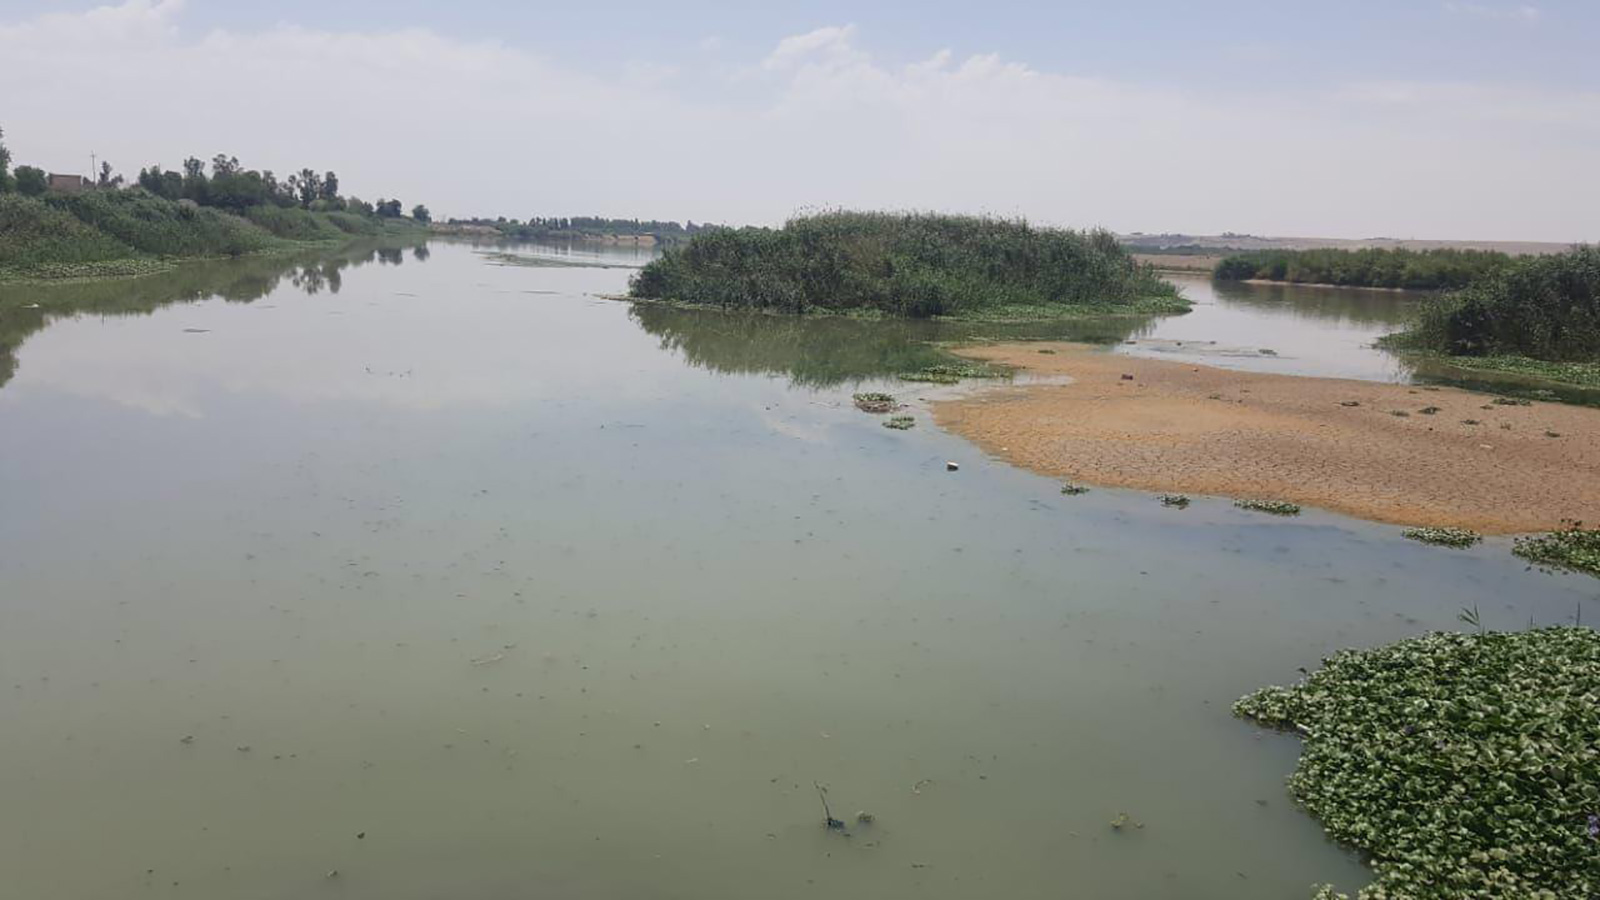 ‪العراق لم يرع مسطحاته المائية سوى بما يقارب 12%‬ العراق لم يرع مسطحاته المائية سوى بما يقارب 12% (الجزيرة)